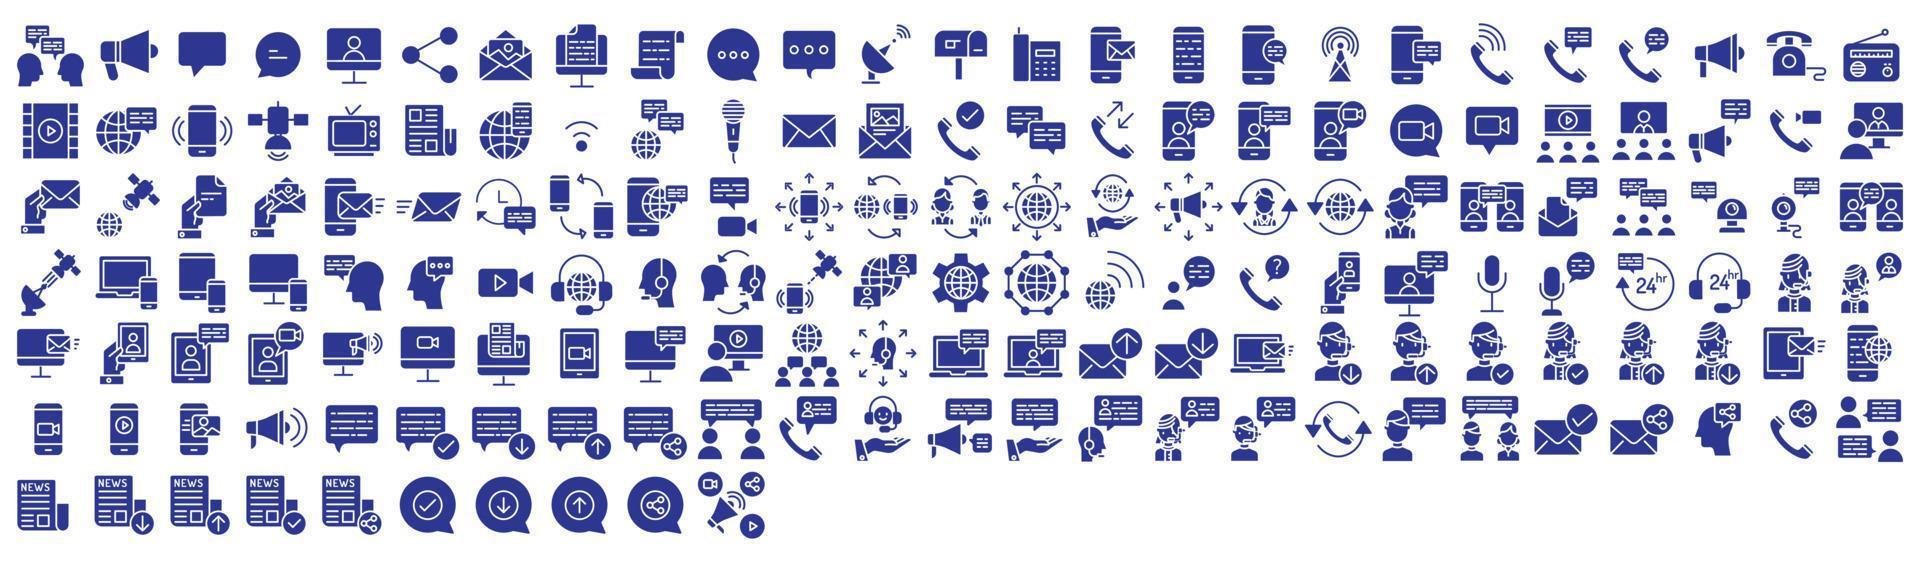 Sammlung von Symbolen im Zusammenhang mit Messaging und Kommunikation, einschließlich Symbolen wie Telefonanruf, Radio, Mikrofon und mehr. Vektorgrafiken, pixelgenau vektor